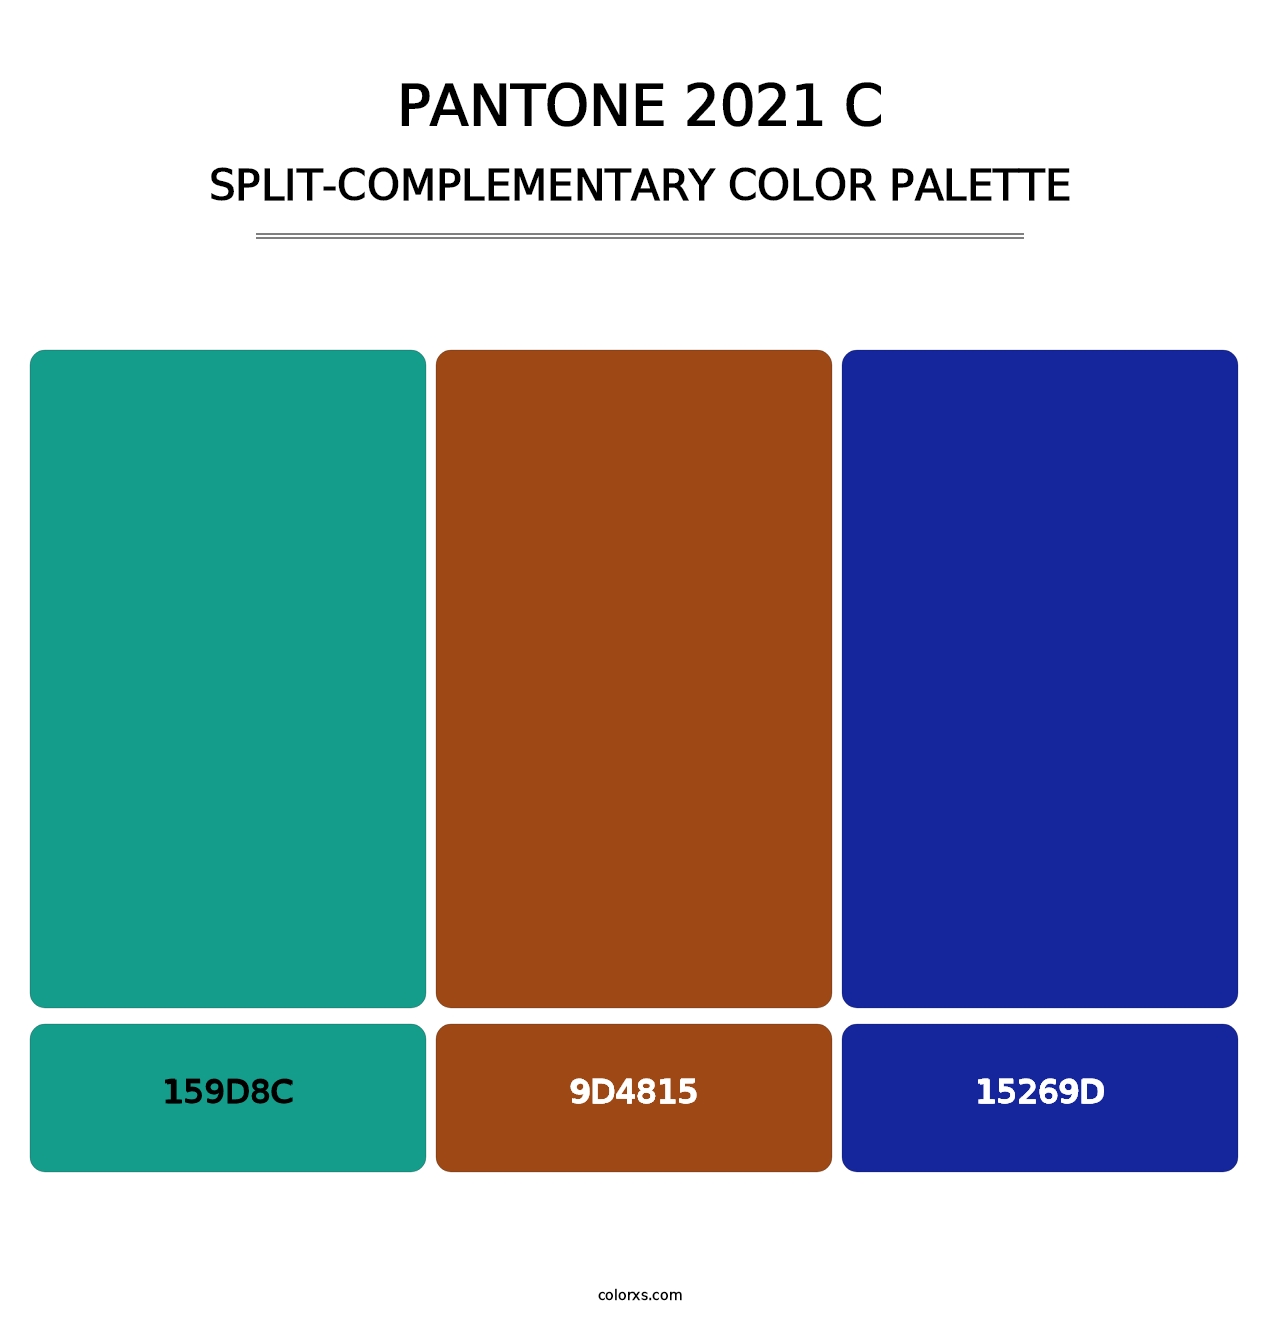 PANTONE 2021 C - Split-Complementary Color Palette